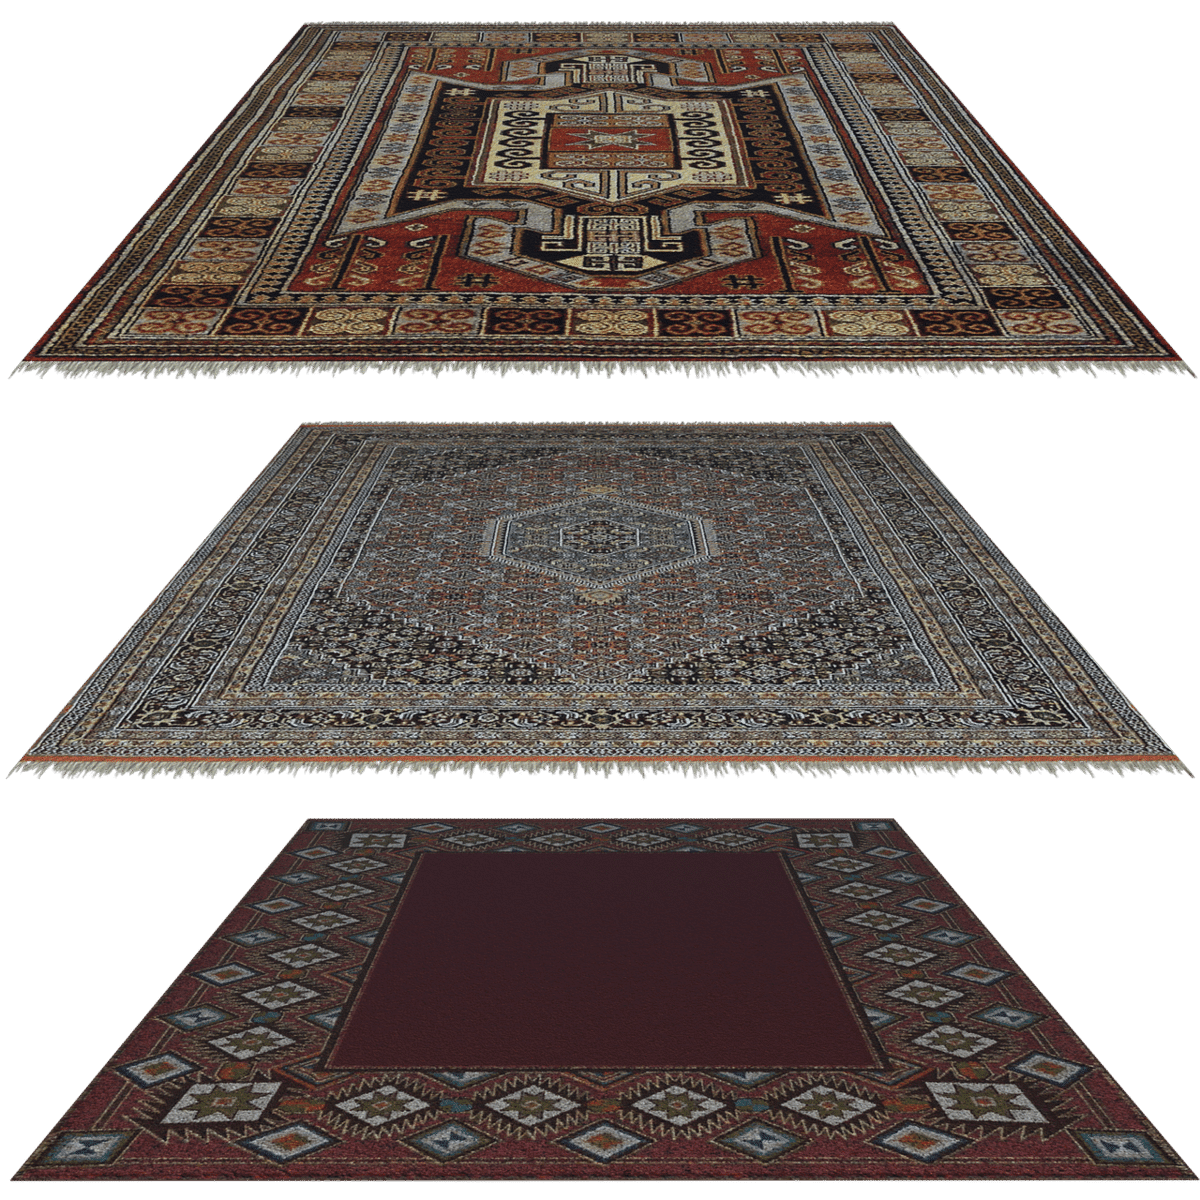 שלוש שטיחים פרסיים